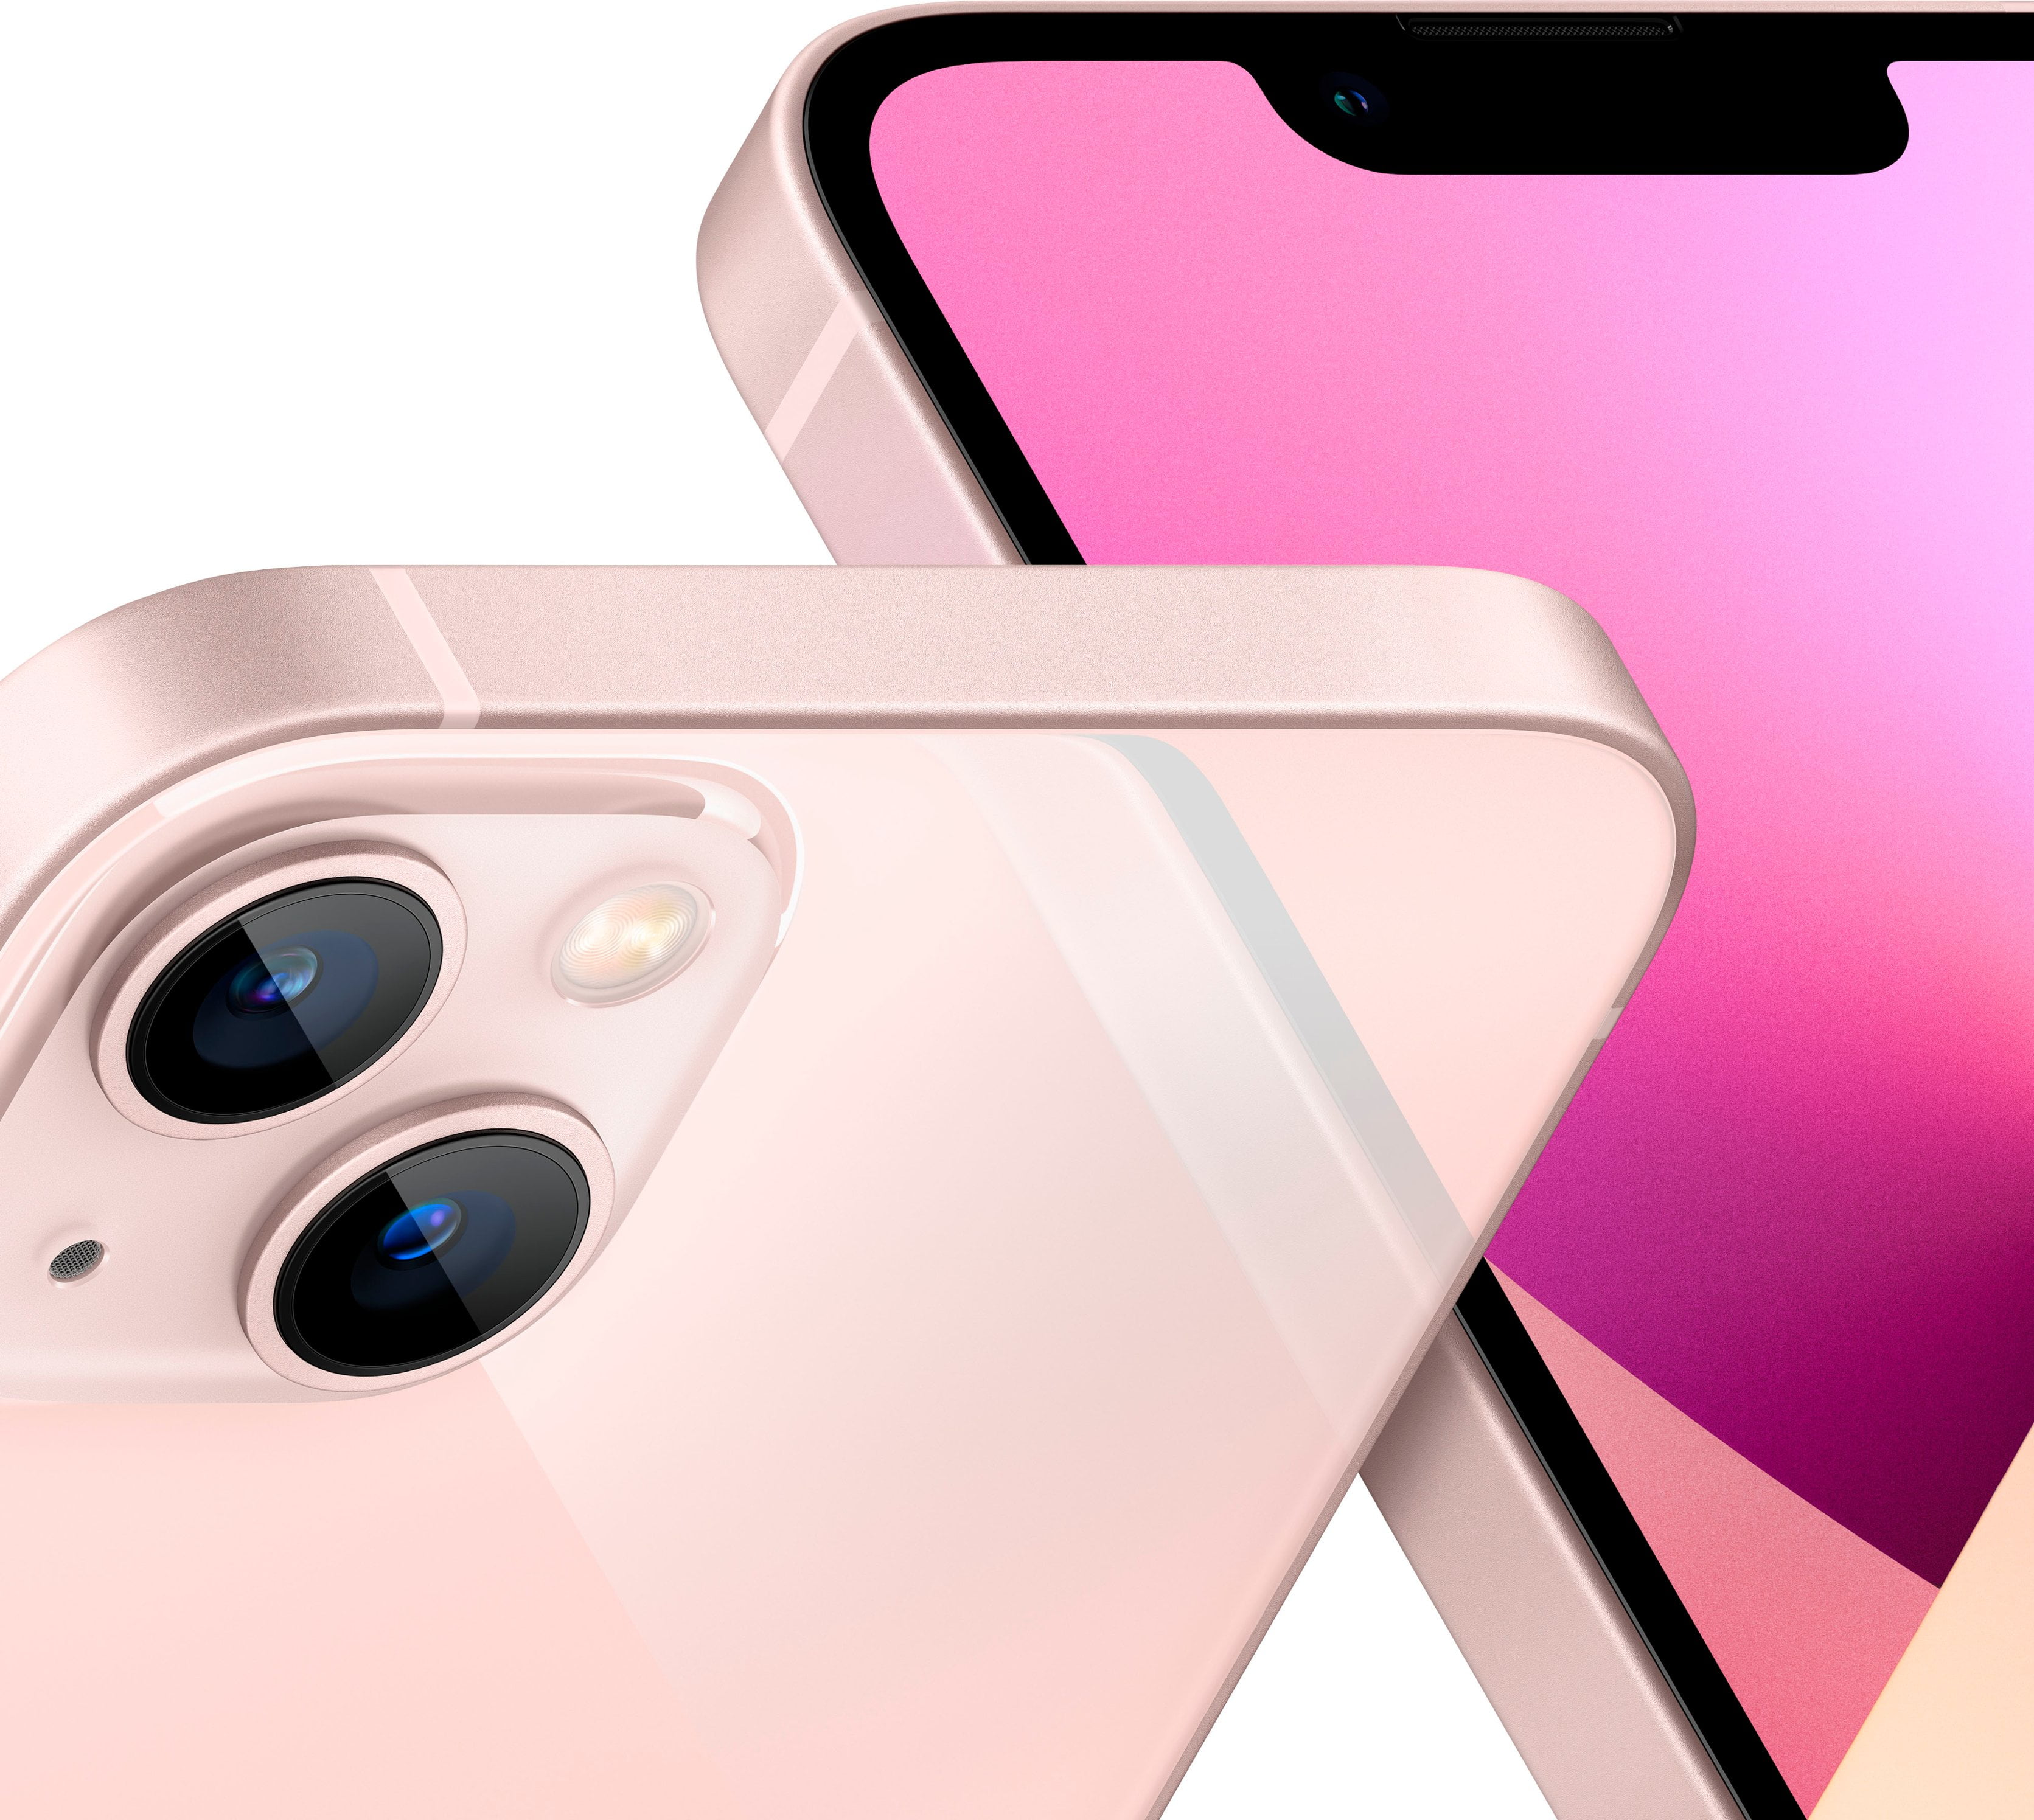 直販正規 iPhone13 pink海外版 128GB 本体 mini スマートフォン本体